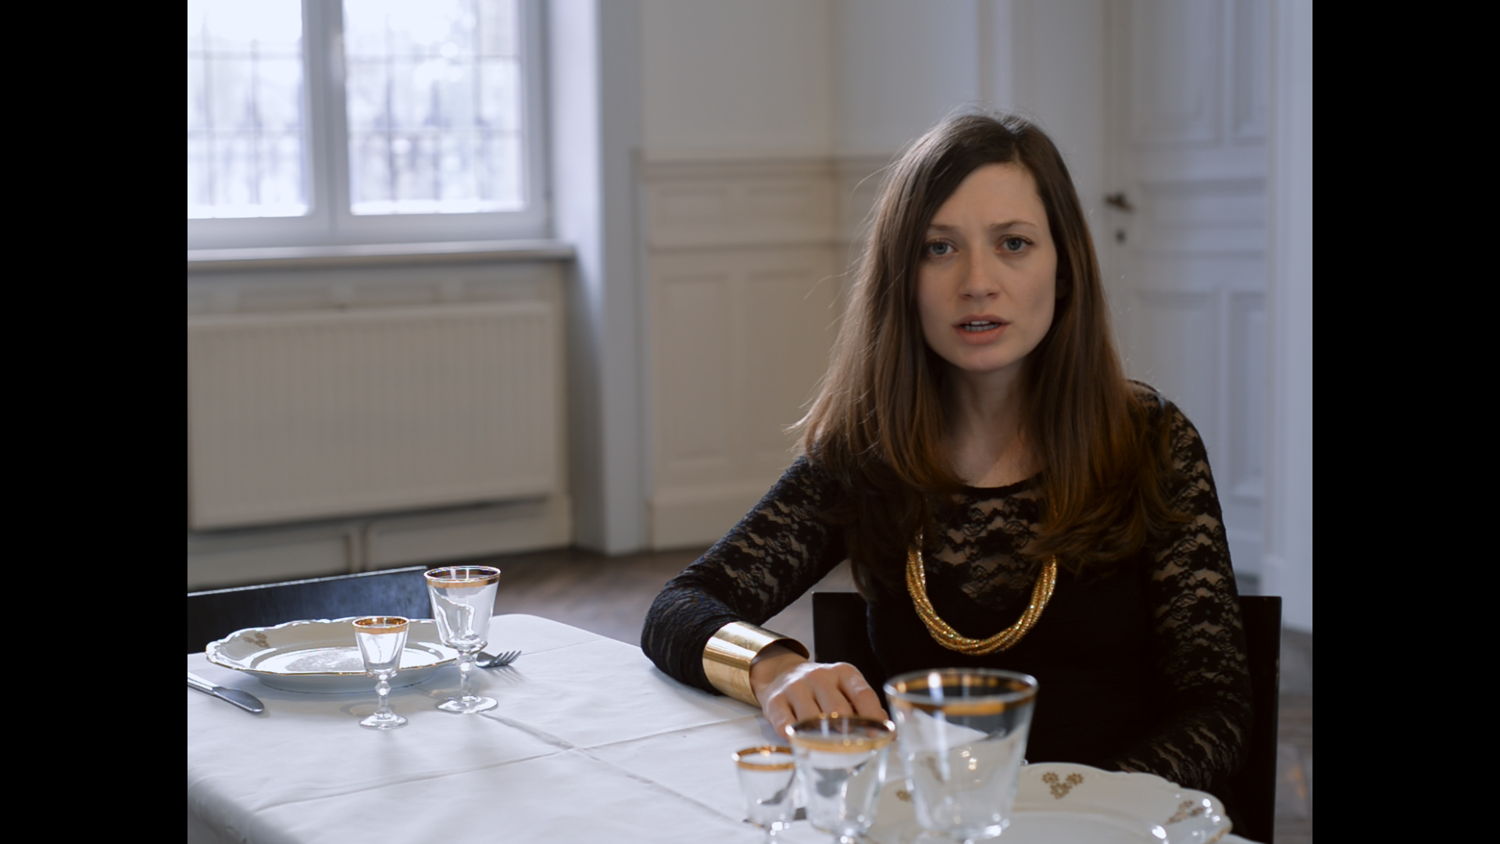 Ariane Loze, Le Banquet, projection vidéo HD, son, couleurs, 17’45’’, 2016. © Ariane Loze. Courtesy de l’artiste et de la galerie Michel Rein Paris/Bruxelles